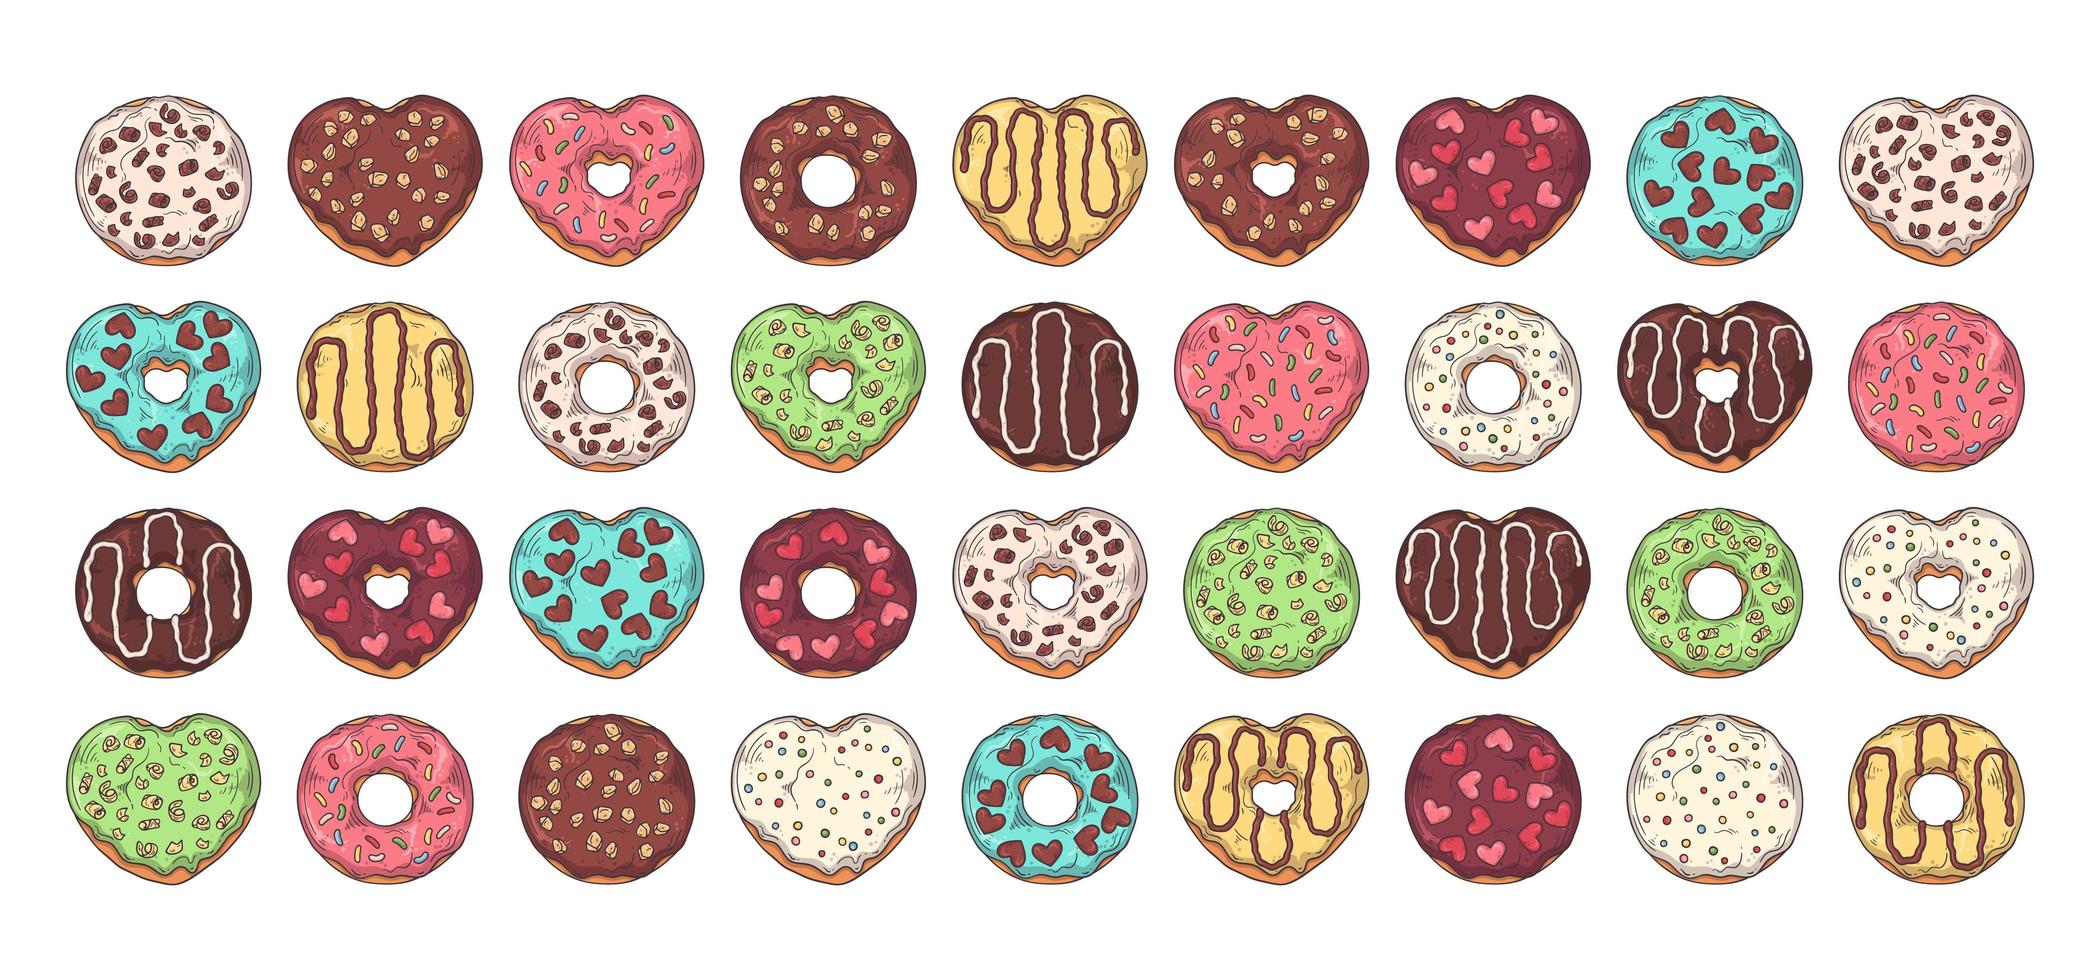 grote vector set geglazuurde donuts versierd met toppings, chocolade, noten.